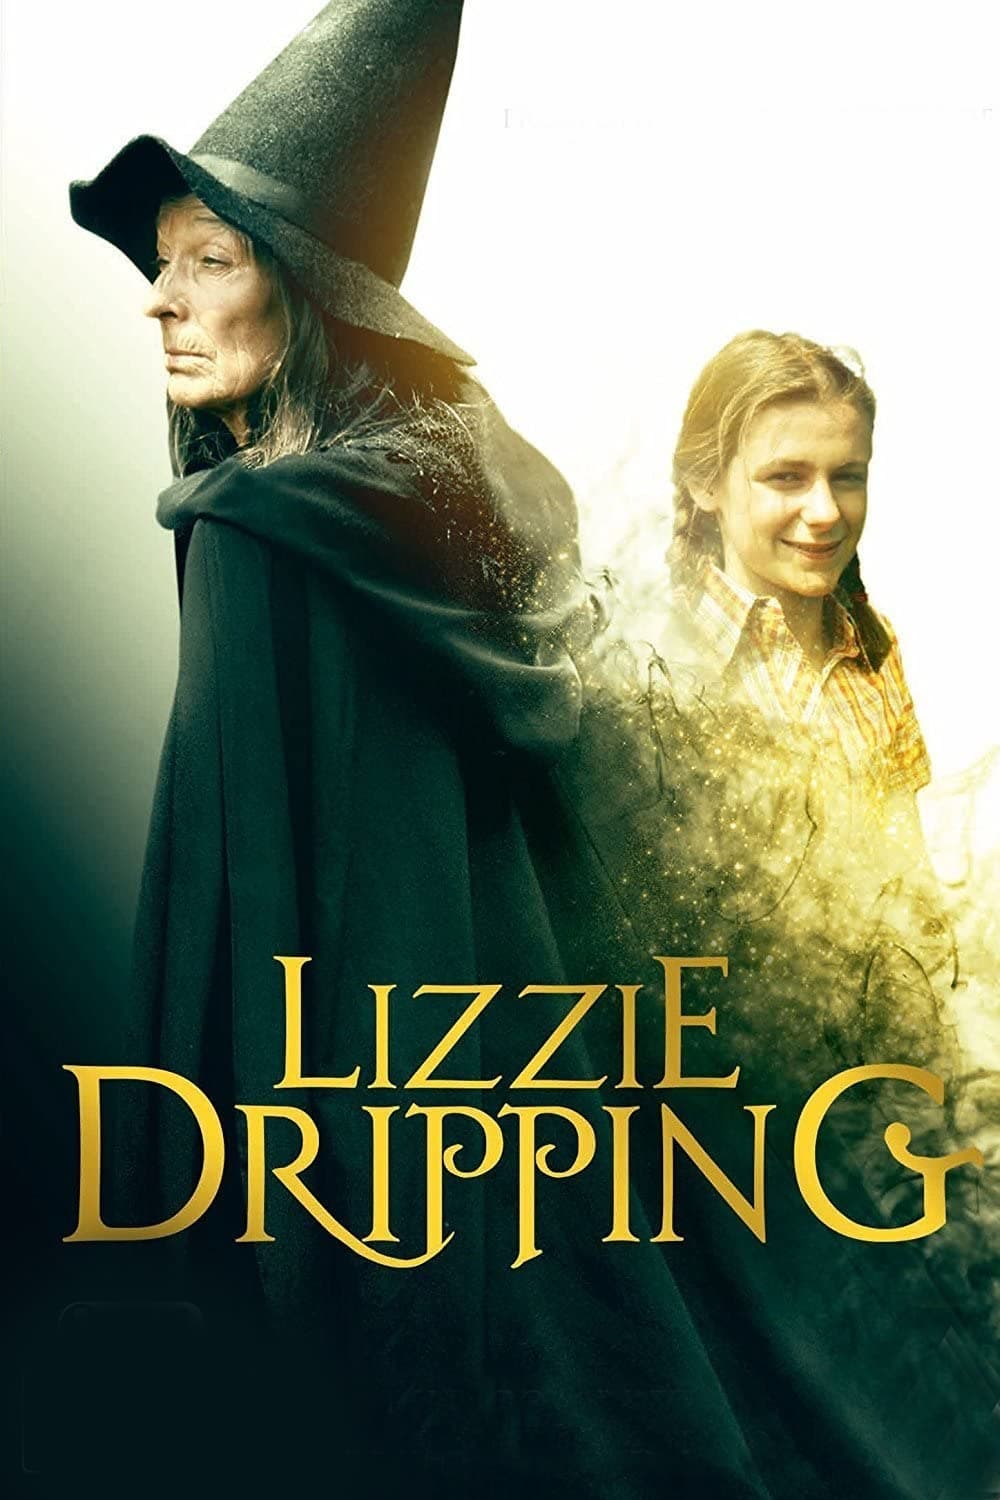 Lizzie Dripping (1973)